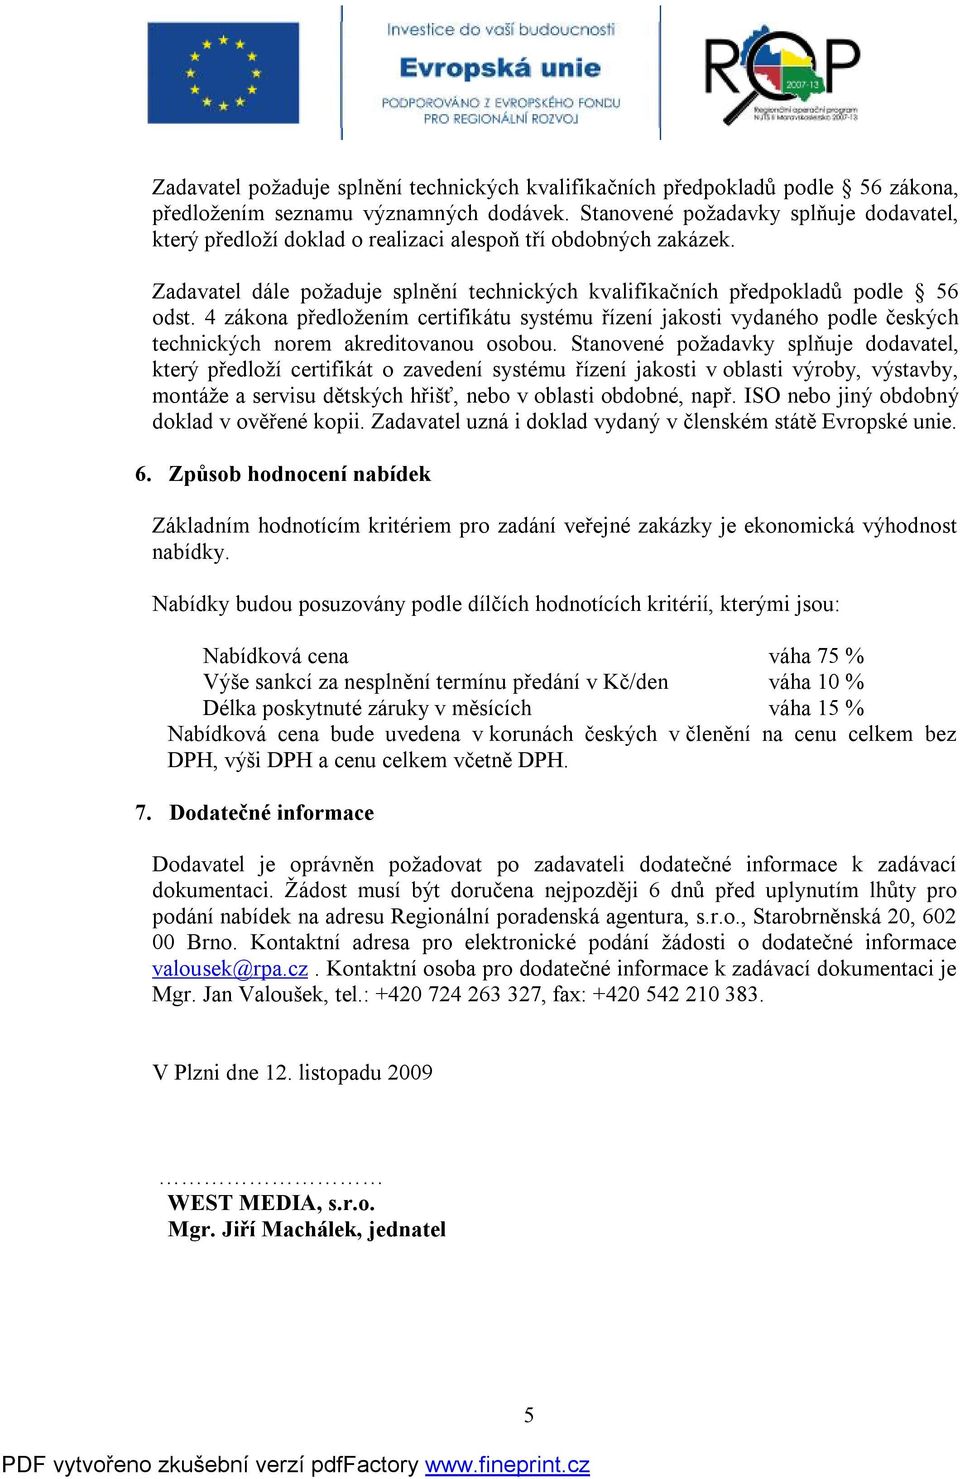 4 zákona předložením certifikátu systému řízení jakosti vydaného podle českých technických norem akreditovanou osobou.